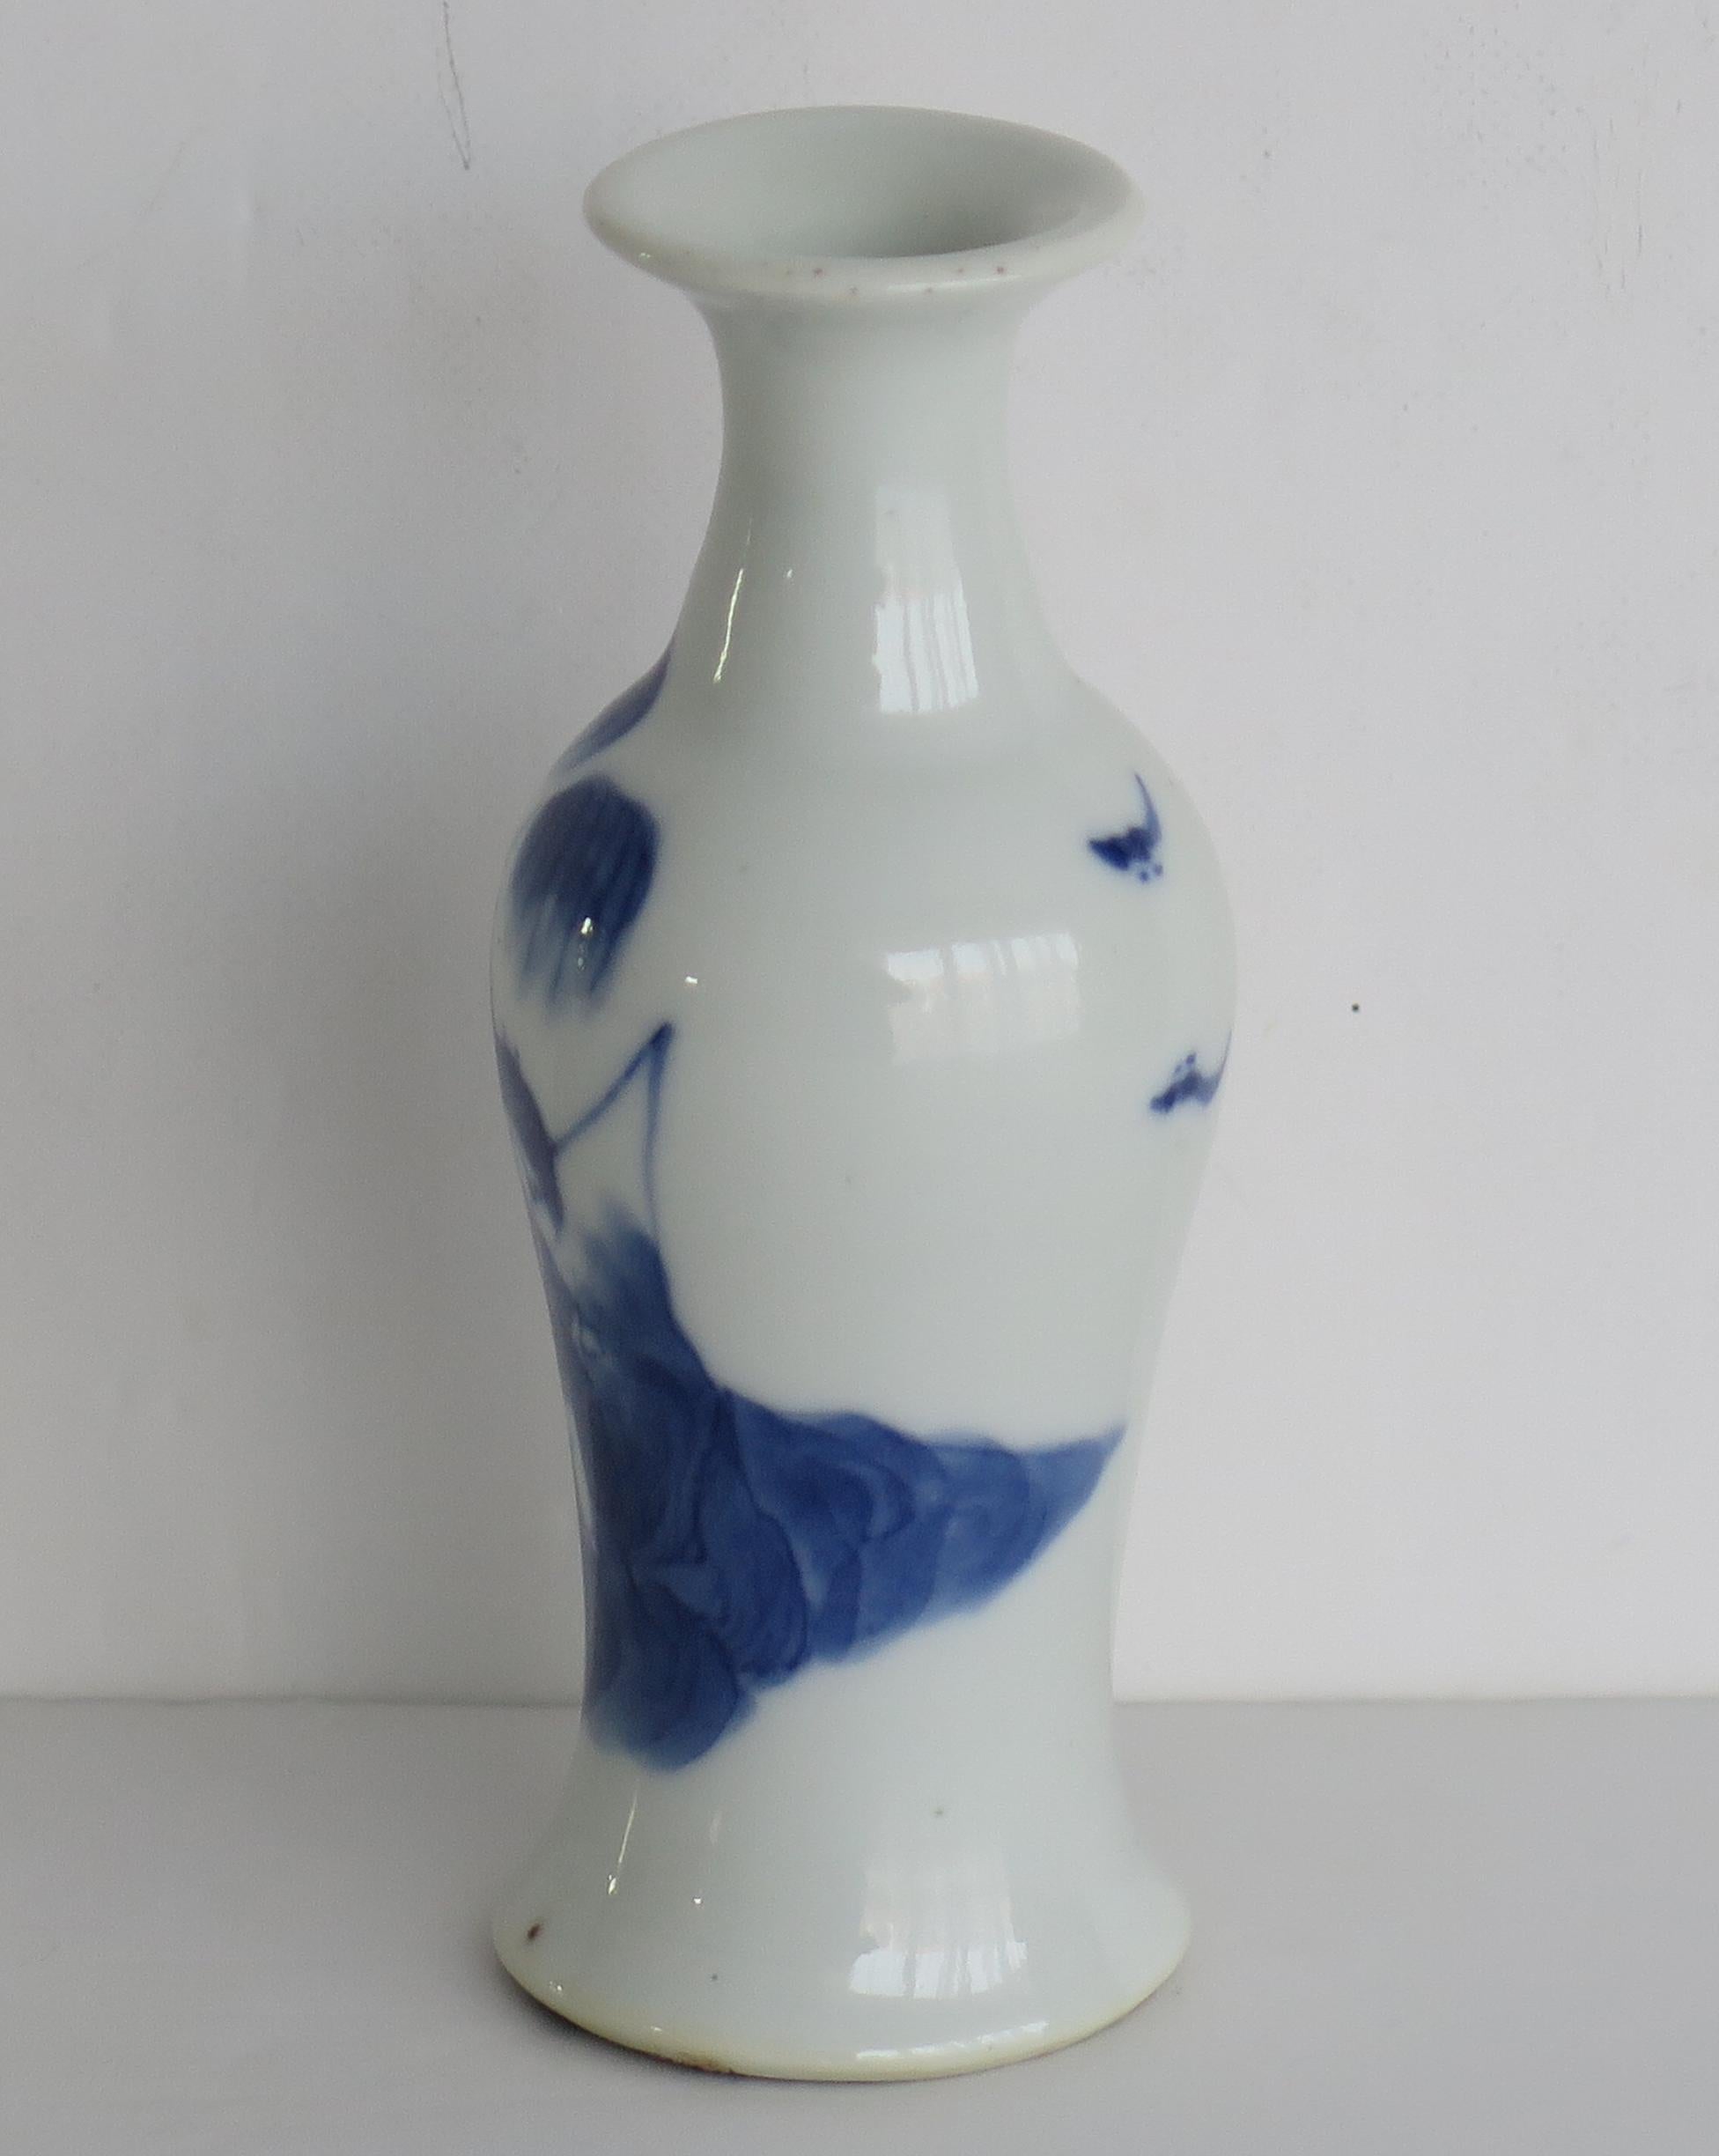 Il s'agit d'une jarre ou d'un petit vase en porcelaine peint à la main, datant de la fin de la dynastie Ming et datant du XVIIe siècle, que nous attribuons à la cargaison de l'épave Hatcher, cette pièce étant de la période Wanli/transition, vers